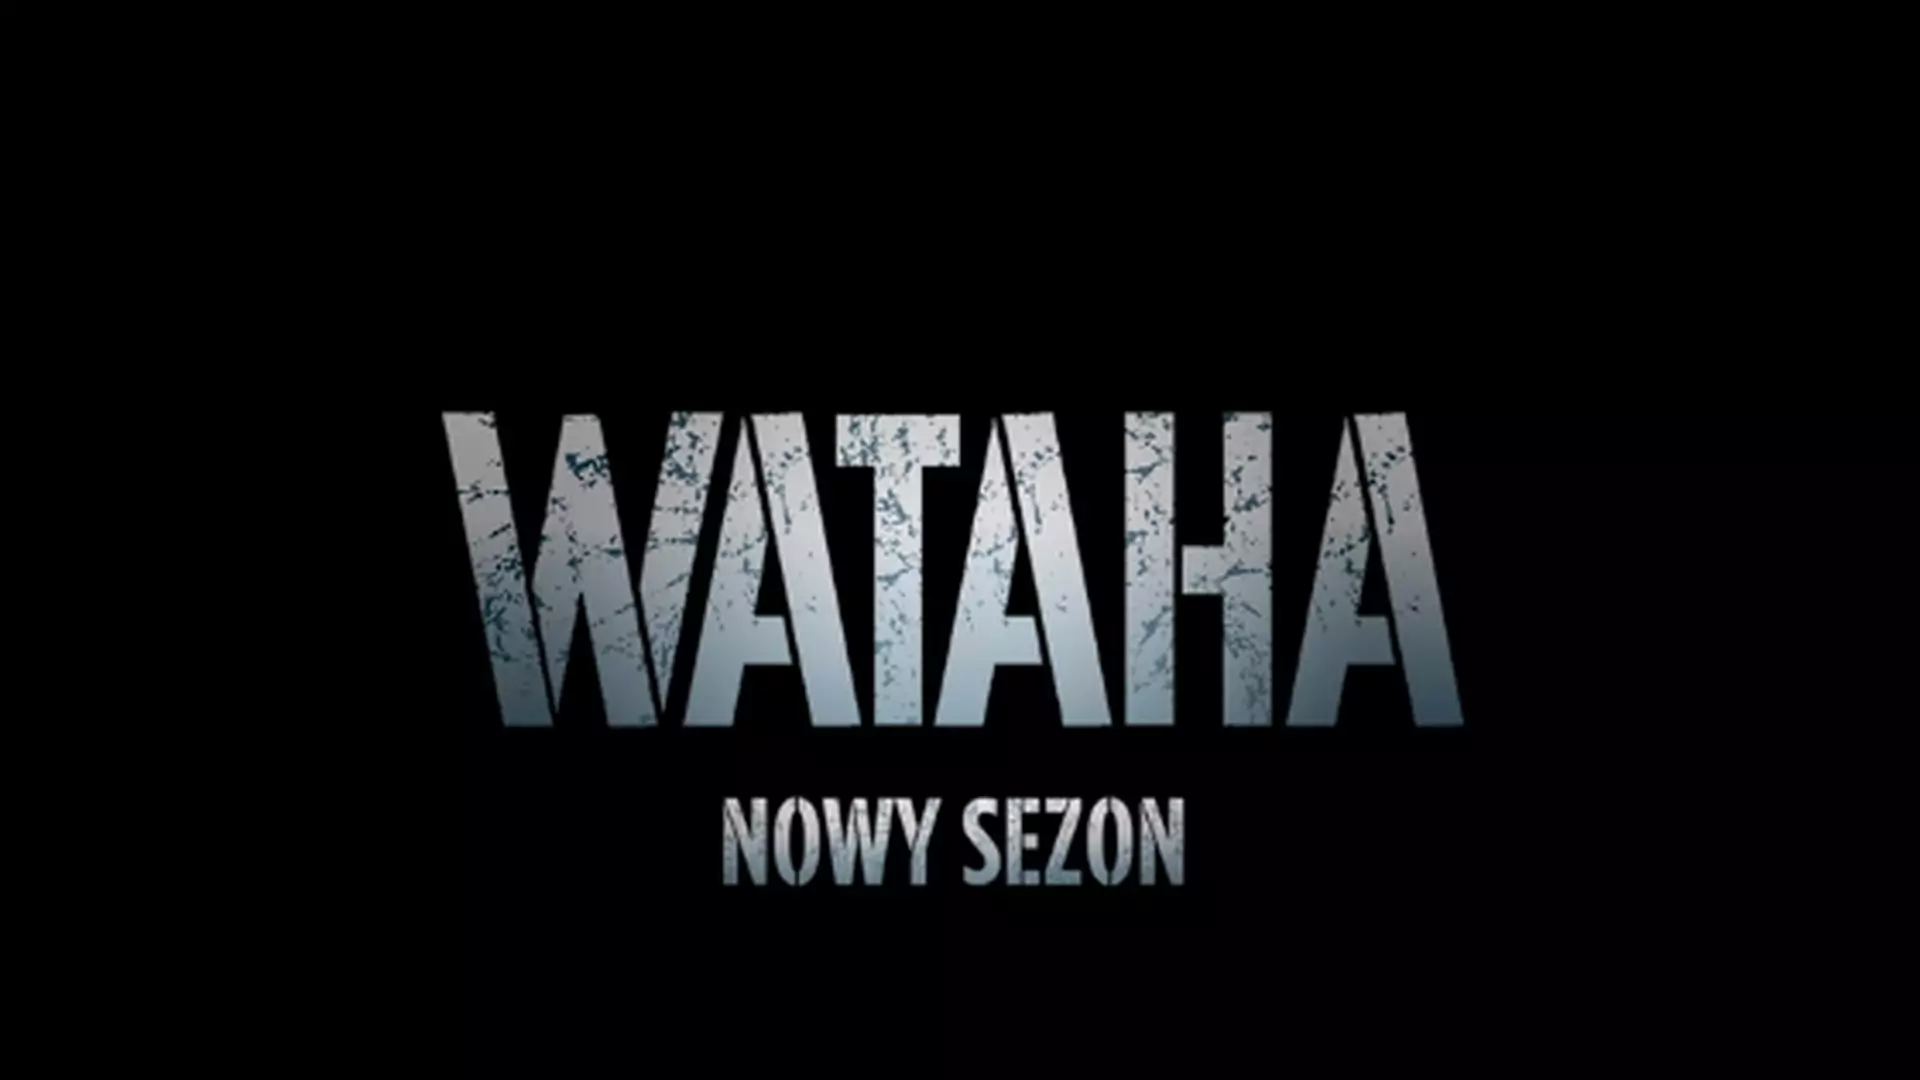 Drugi sezon "Watahy" jeszcze w tym roku! Mamy nowe fotki z planu